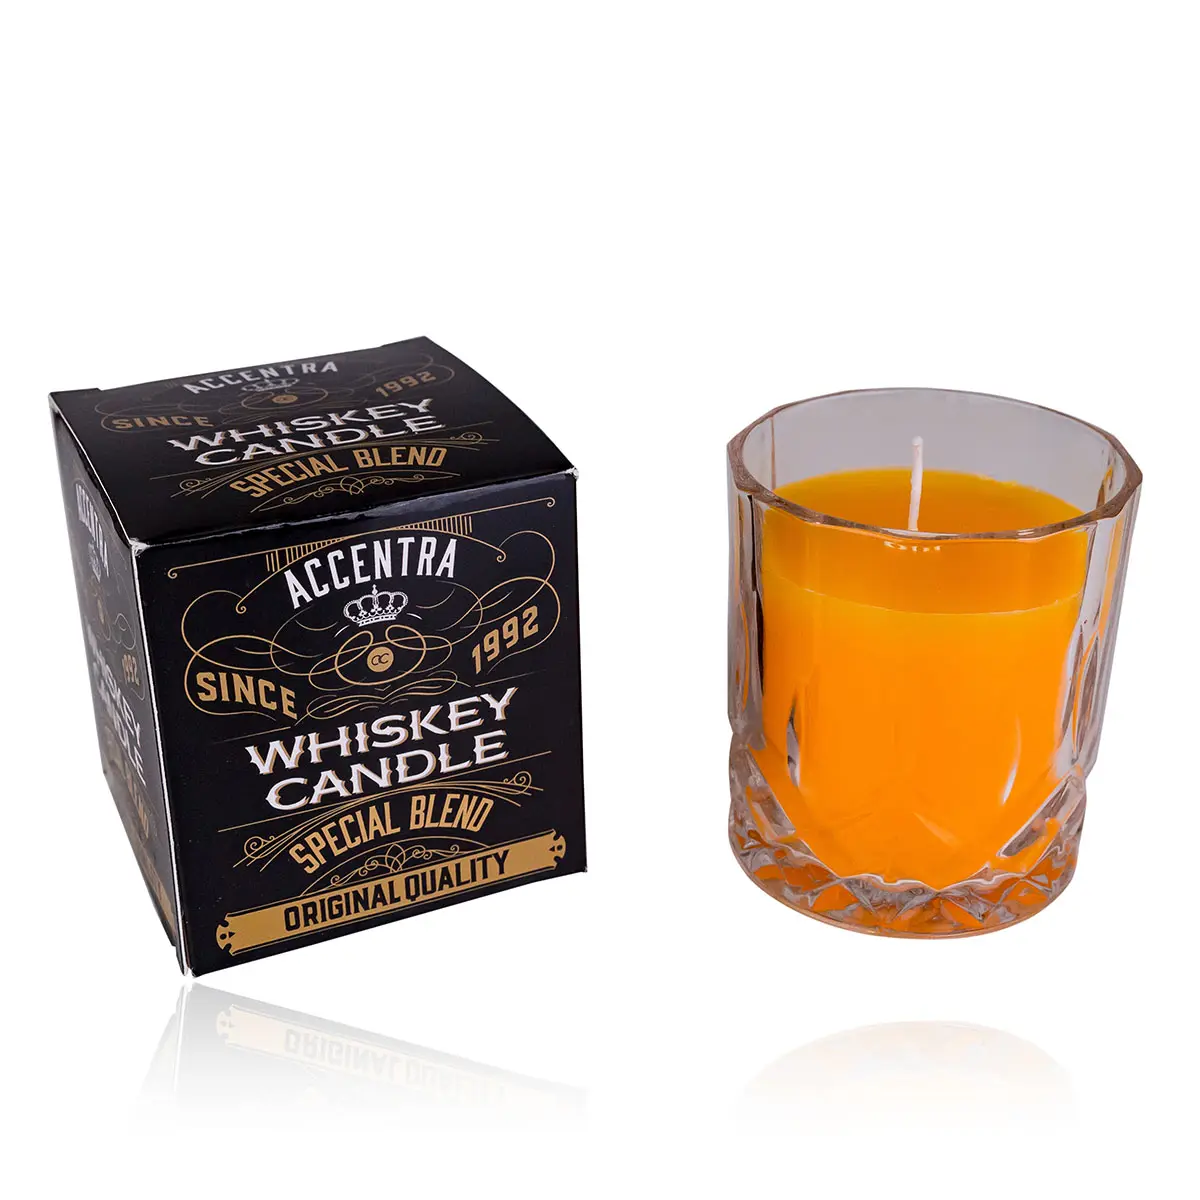 Accentra Geurkaars Whisky In Glas Met Geschenkdoos, 360G, 8.5X7Cm, Geur: Whisky, Kleur: Oranje